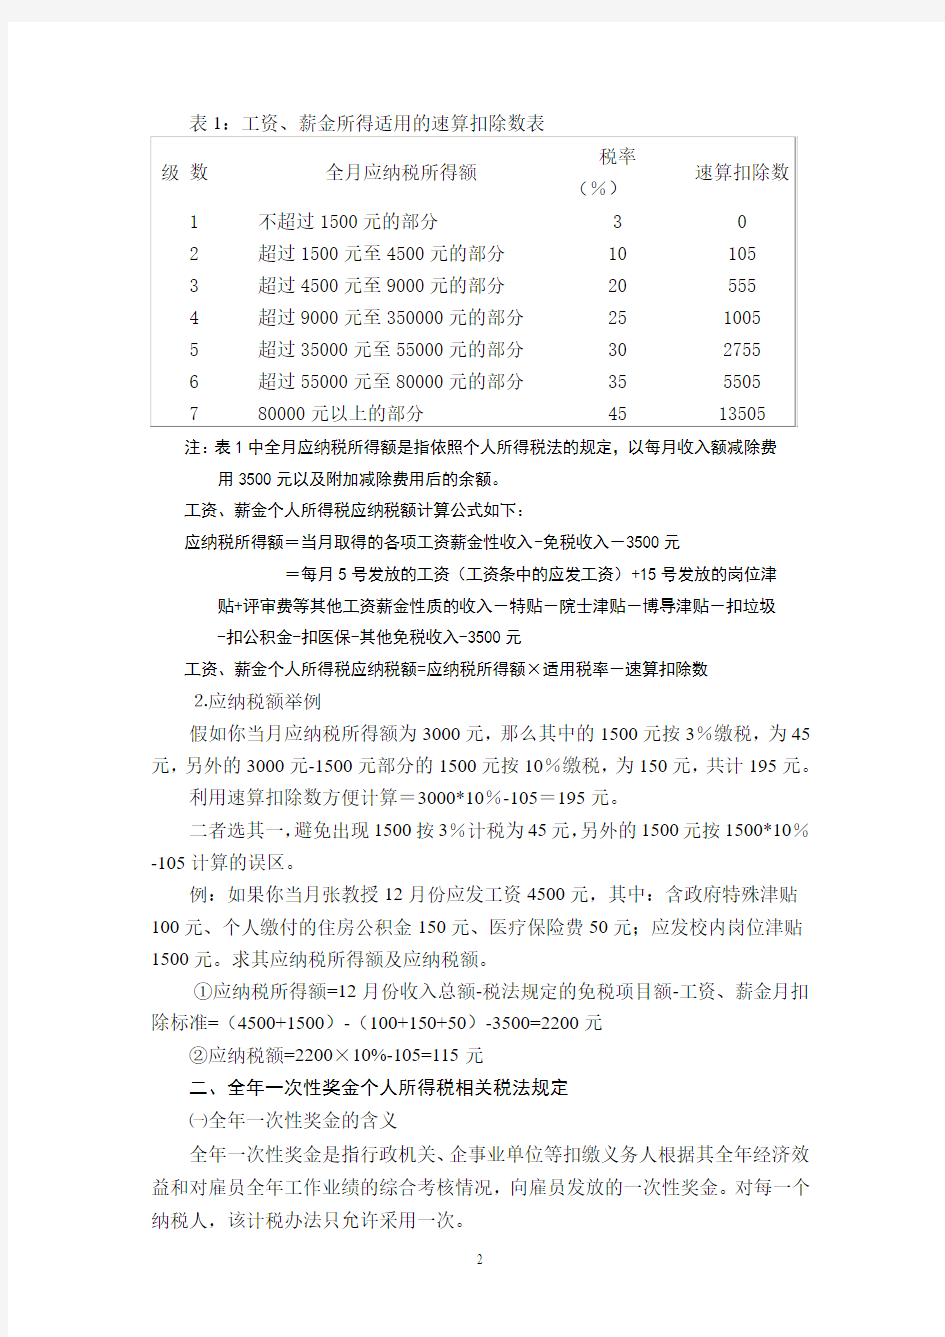 新修改的中华人民共和国个人所得税法自2011年9月1日起施行